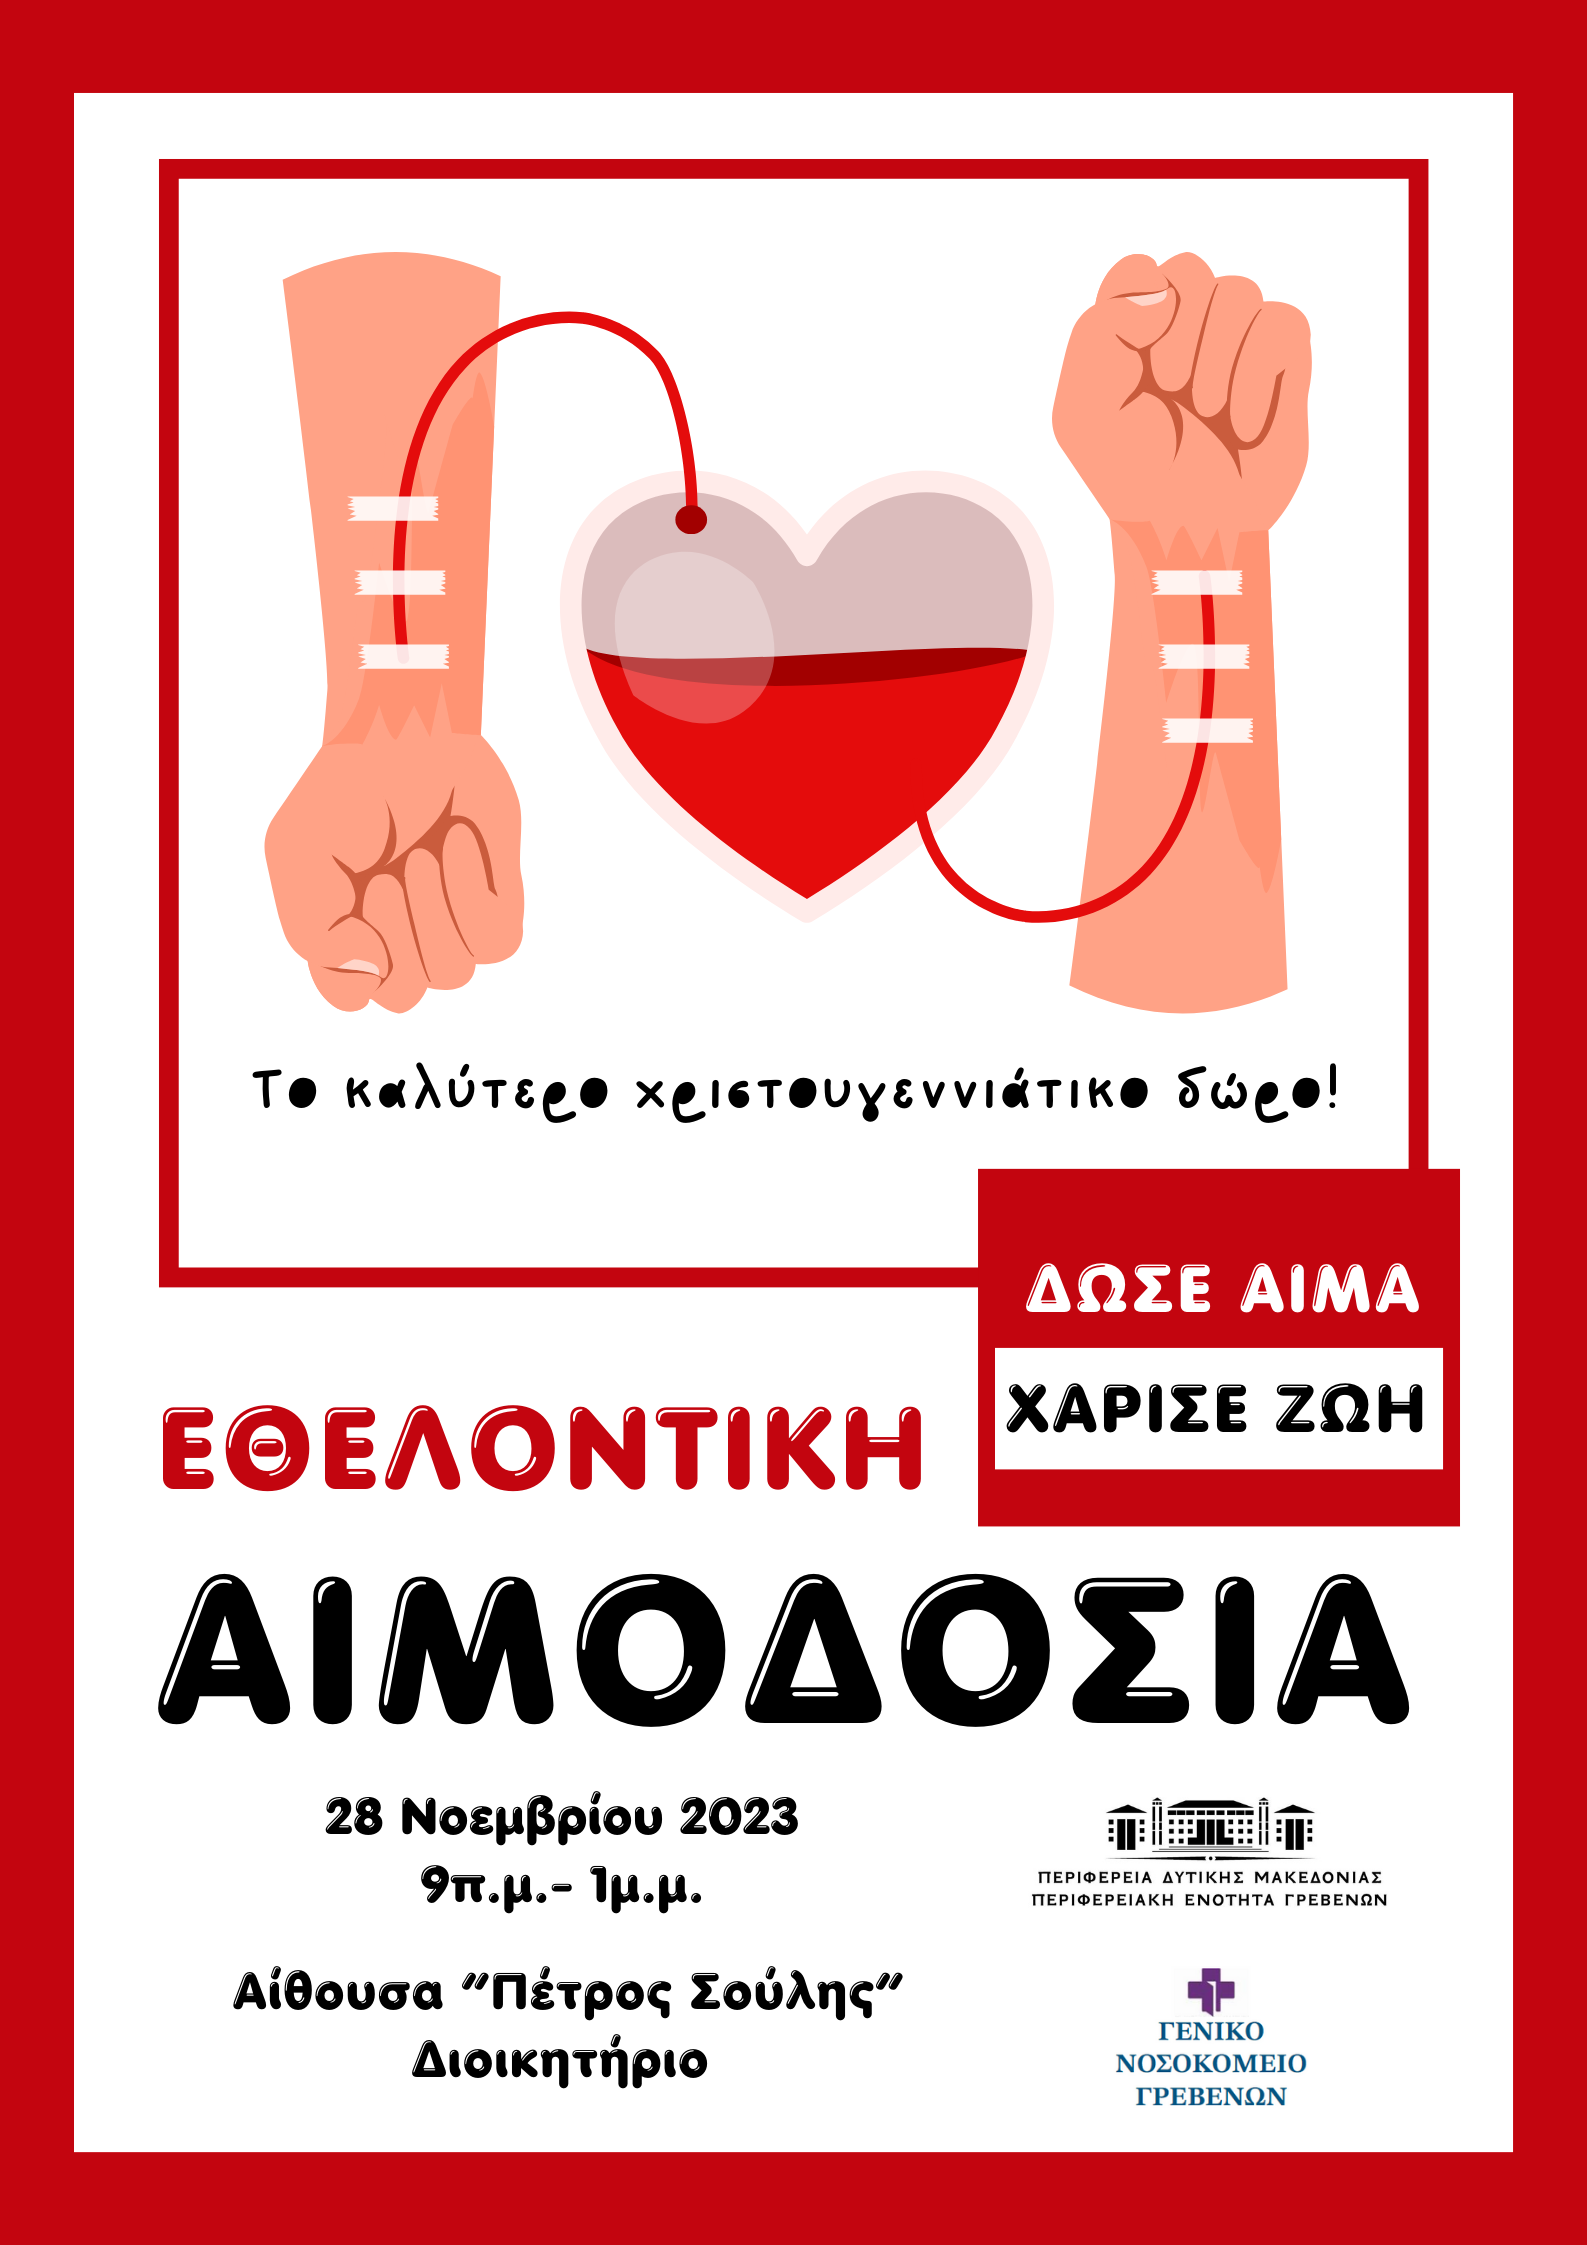 Π.Ε. Γρεβενών: Πρόσκληση συμμετοχής σε Εθελοντική Αιμοδοσία την Τρίτη 28-11-2023